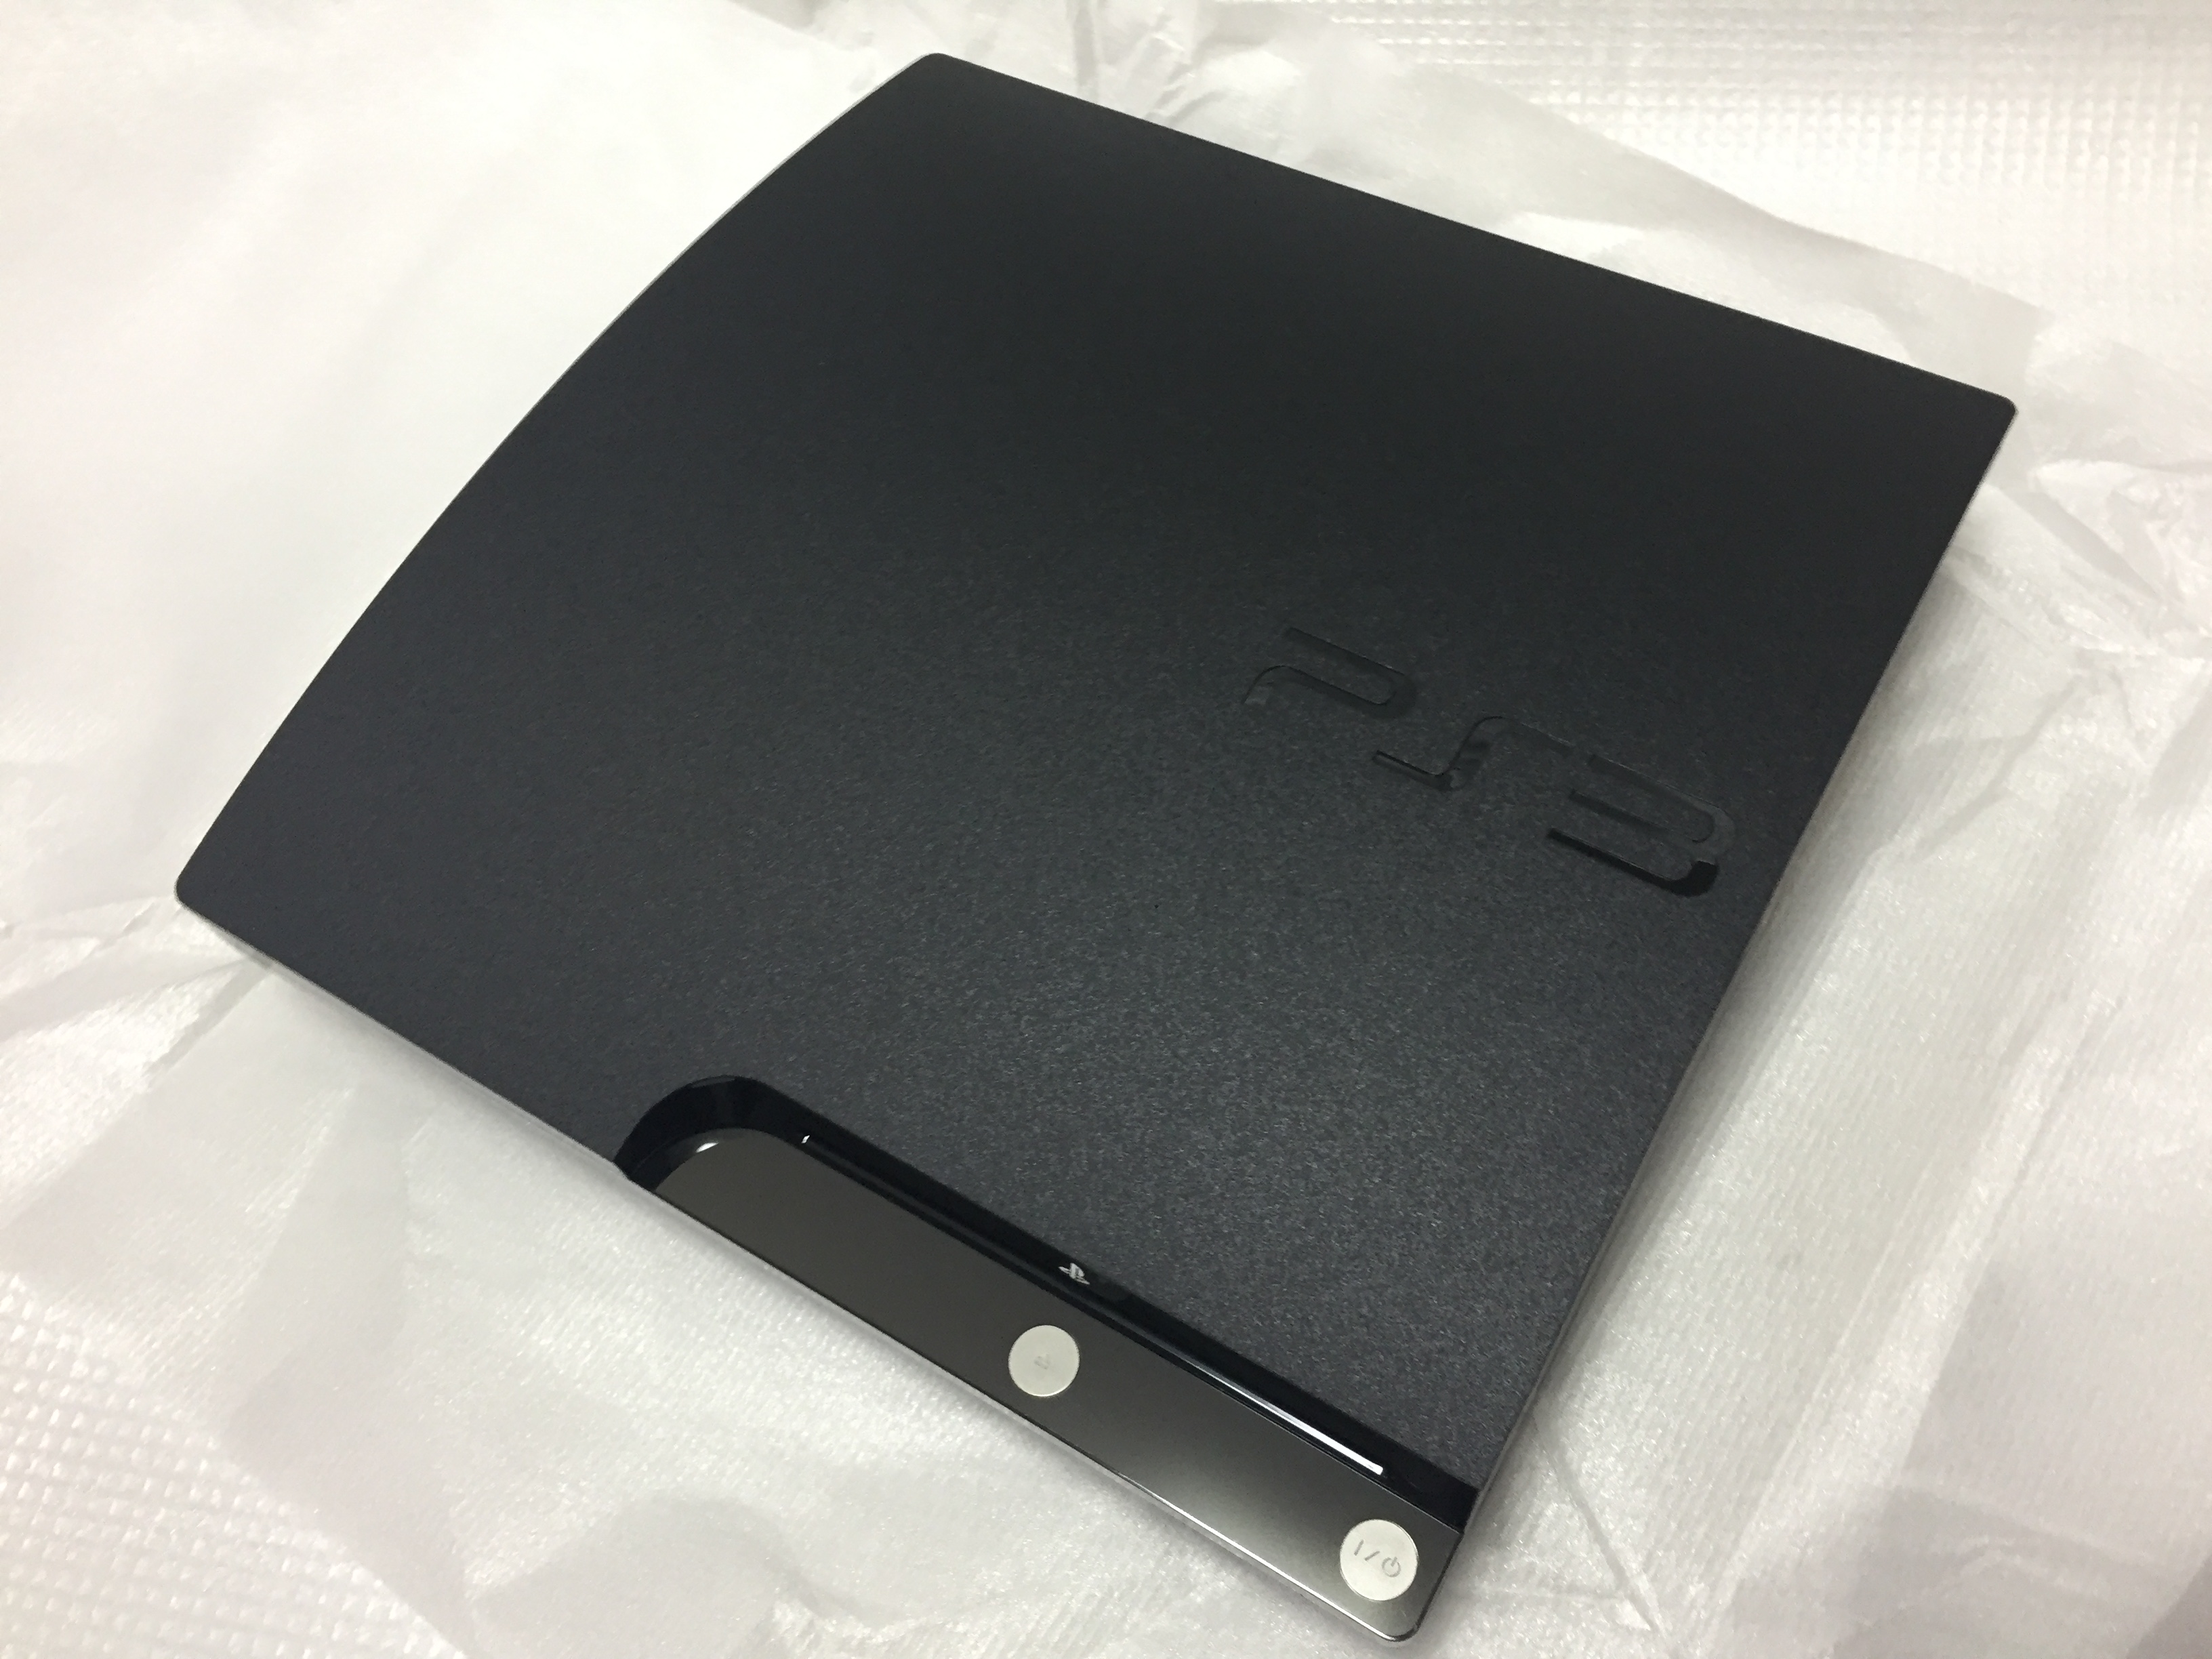 17810円 【未使用品】 PLAYSTATION 3 20GB メーカー生産終了